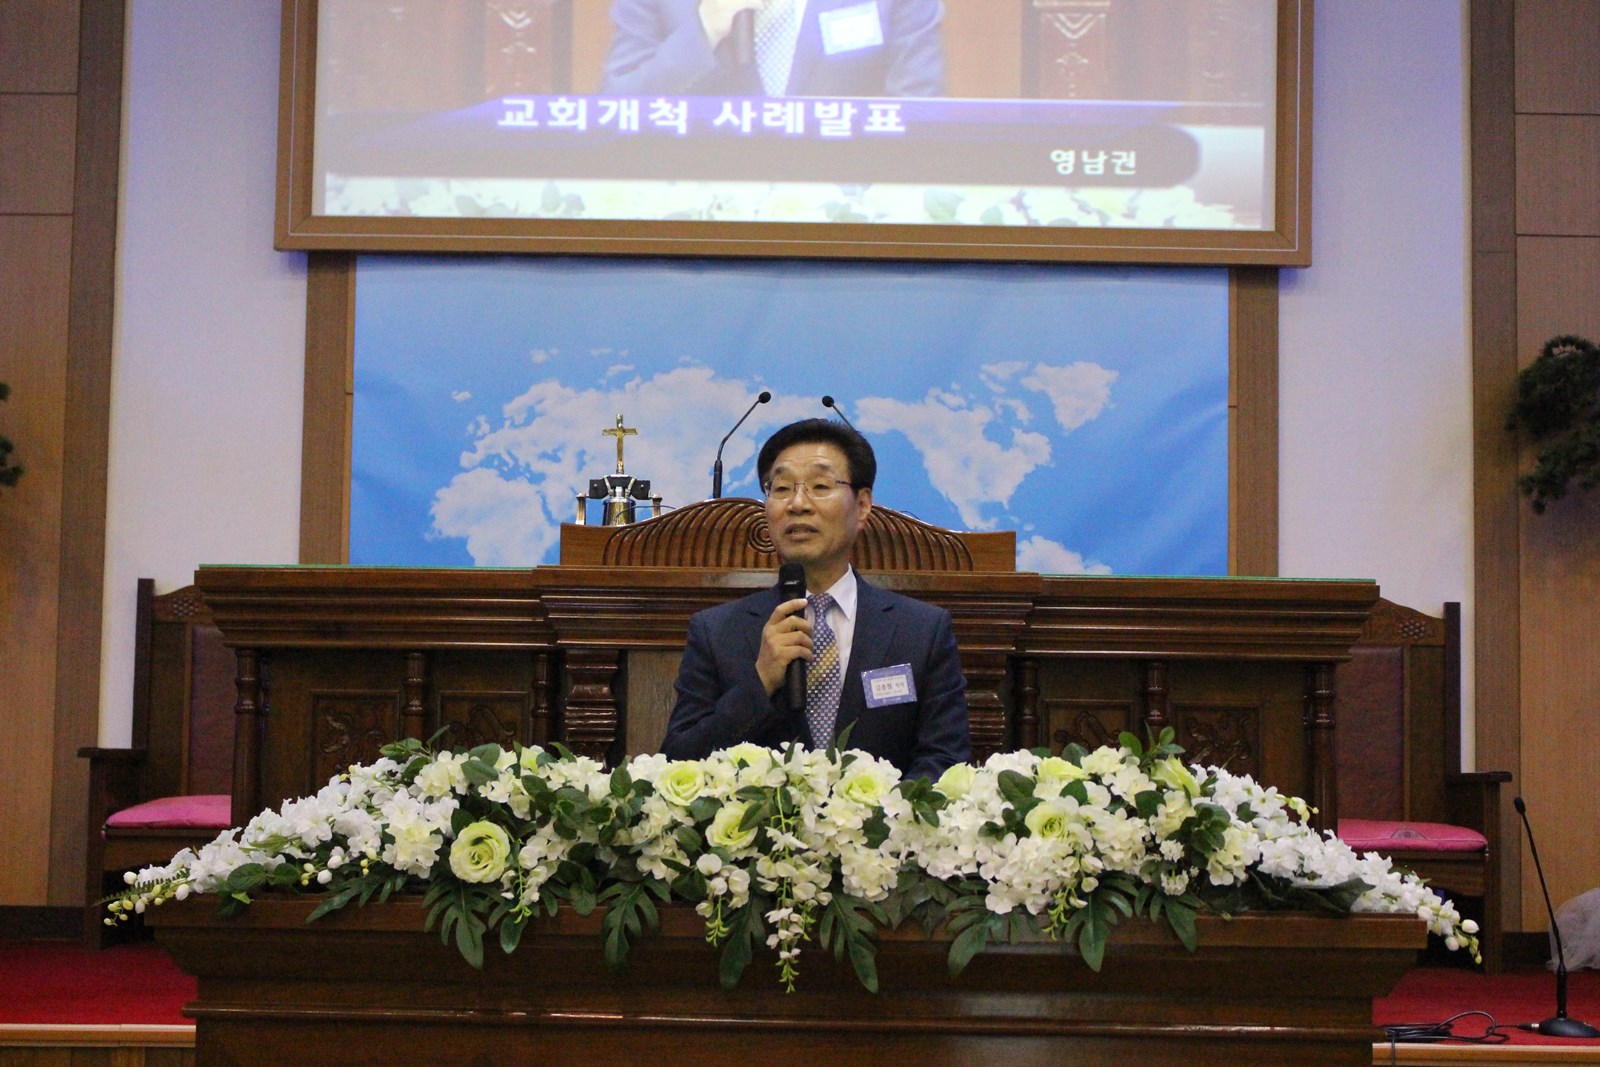 ▲노회가 주도하는 교회 개척 사례를 발표하고 있는 김종철 목사